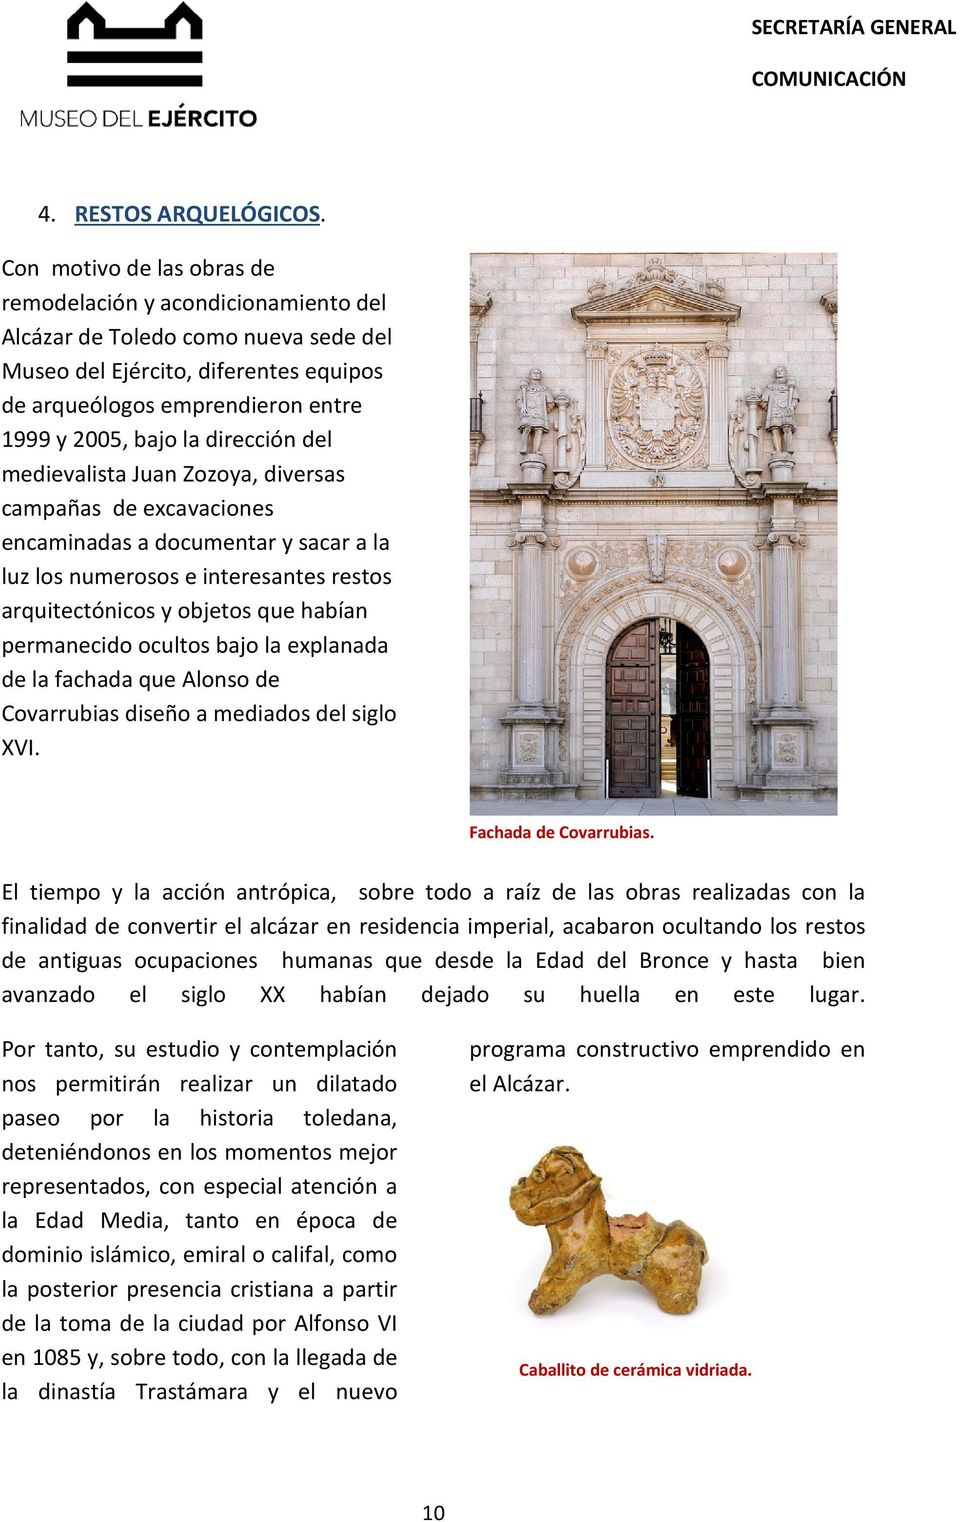 dirección del medievalista Juan Zozoya, diversas campañas de excavaciones encaminadas a documentar y sacar a la luz los numerosos e interesantes restos arquitectónicos y objetos que habían